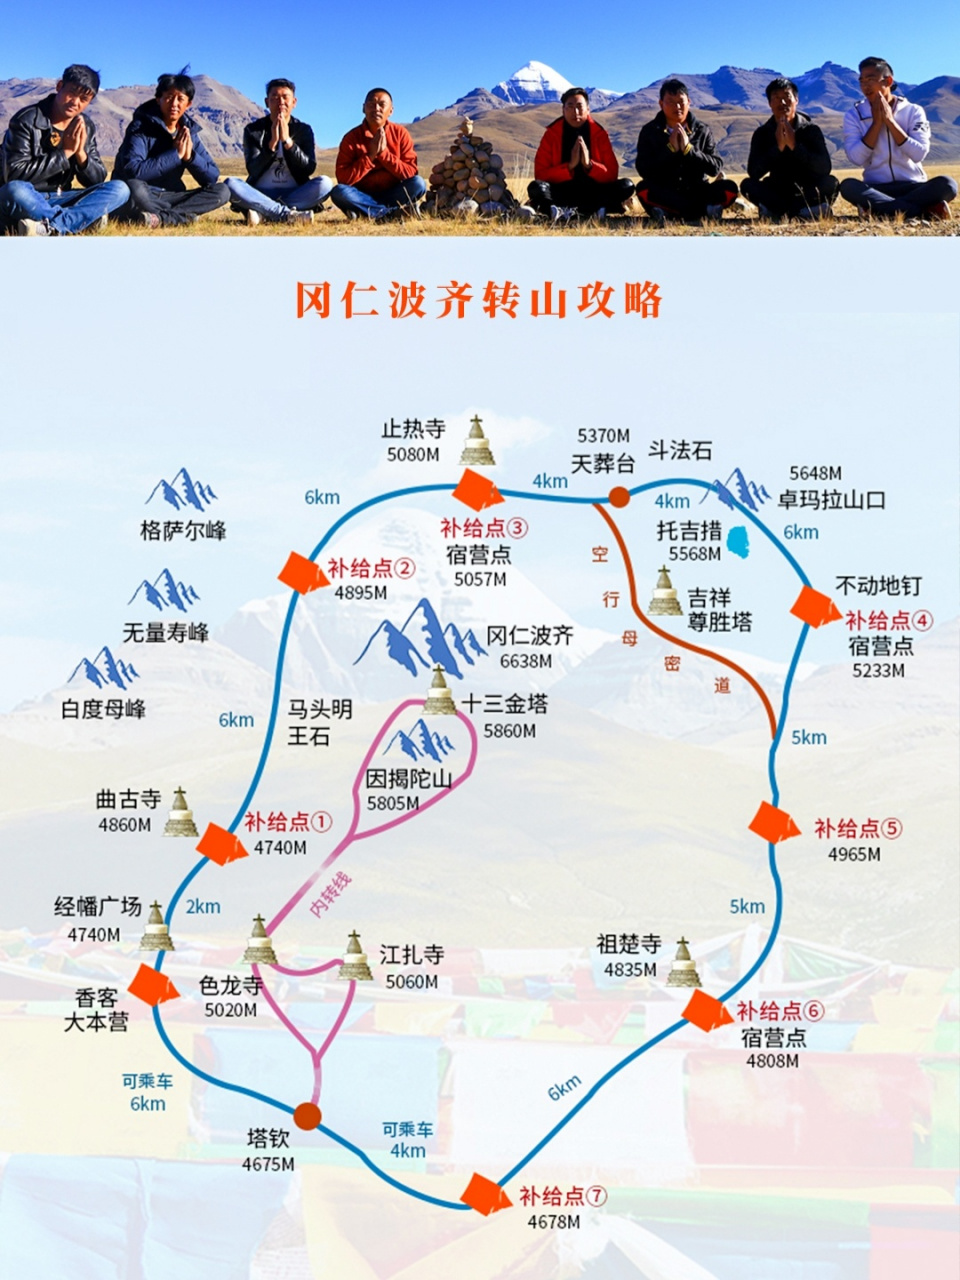 冈仁波齐地理位置图片